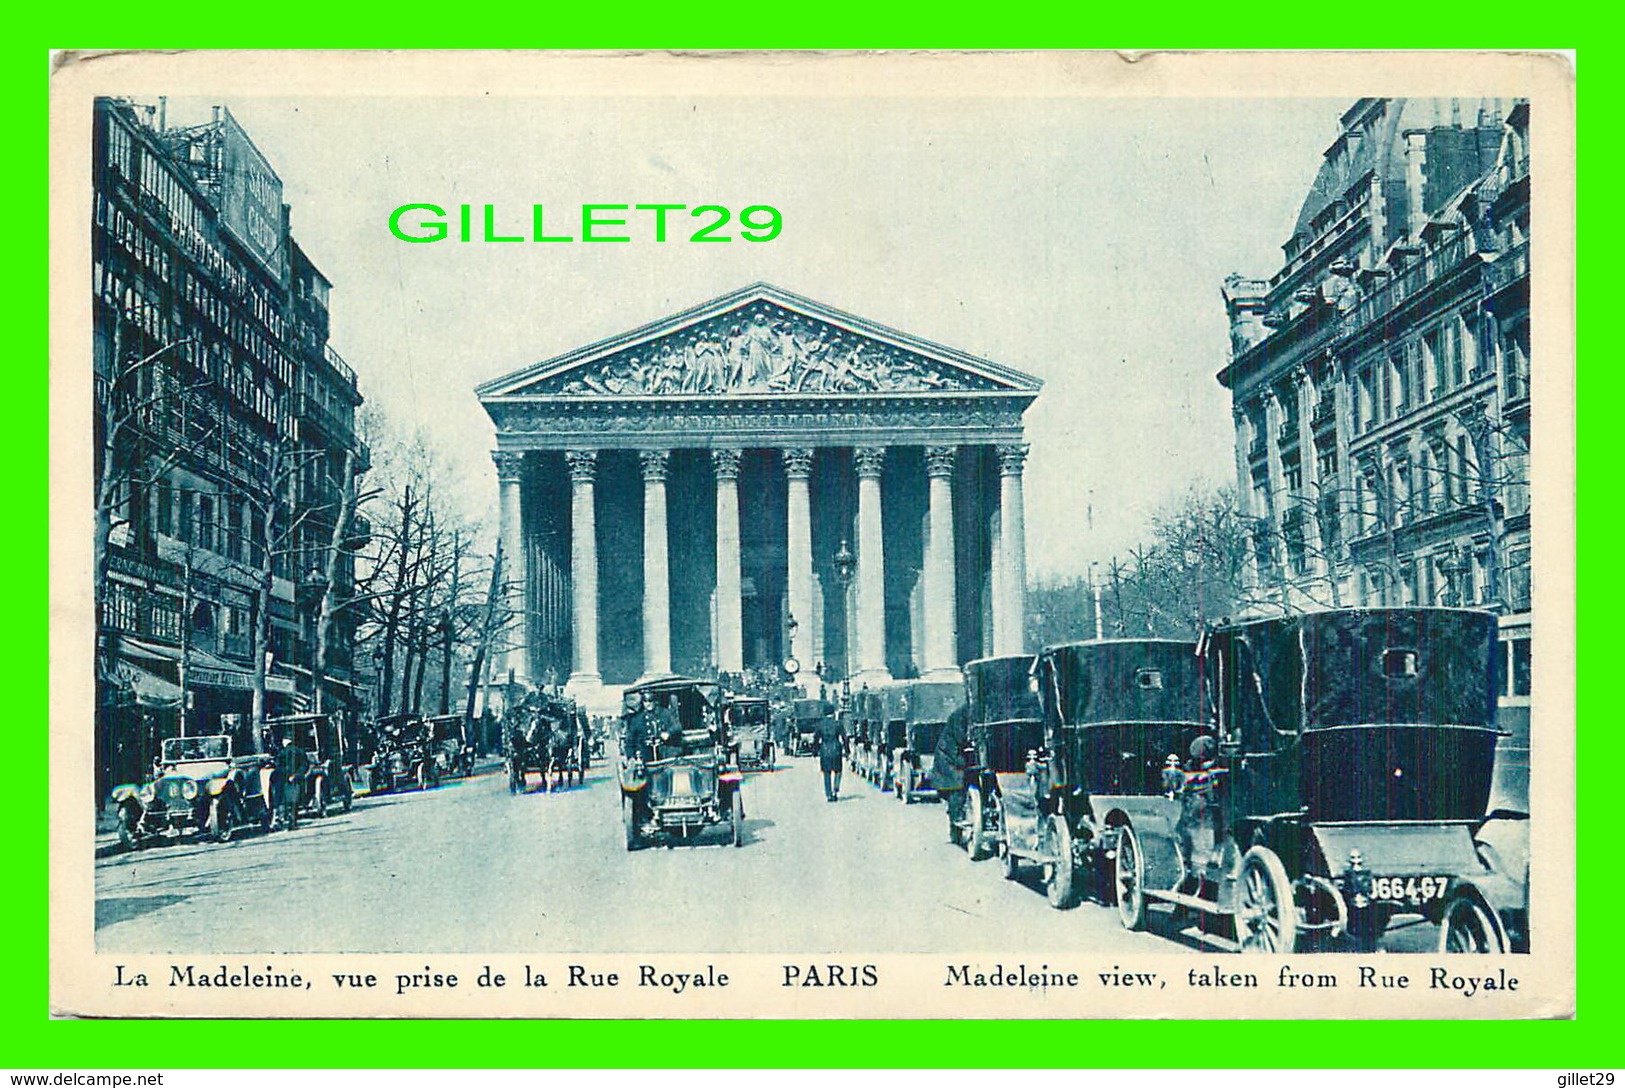 PARIS (75) - LA MADELEINE, VUE PRISE DE LA RUE ROYALE - ANIMÉE DE VIEILLE VOITURES - ÉDITIONS PAUL LUCIANI - - Autres Monuments, édifices